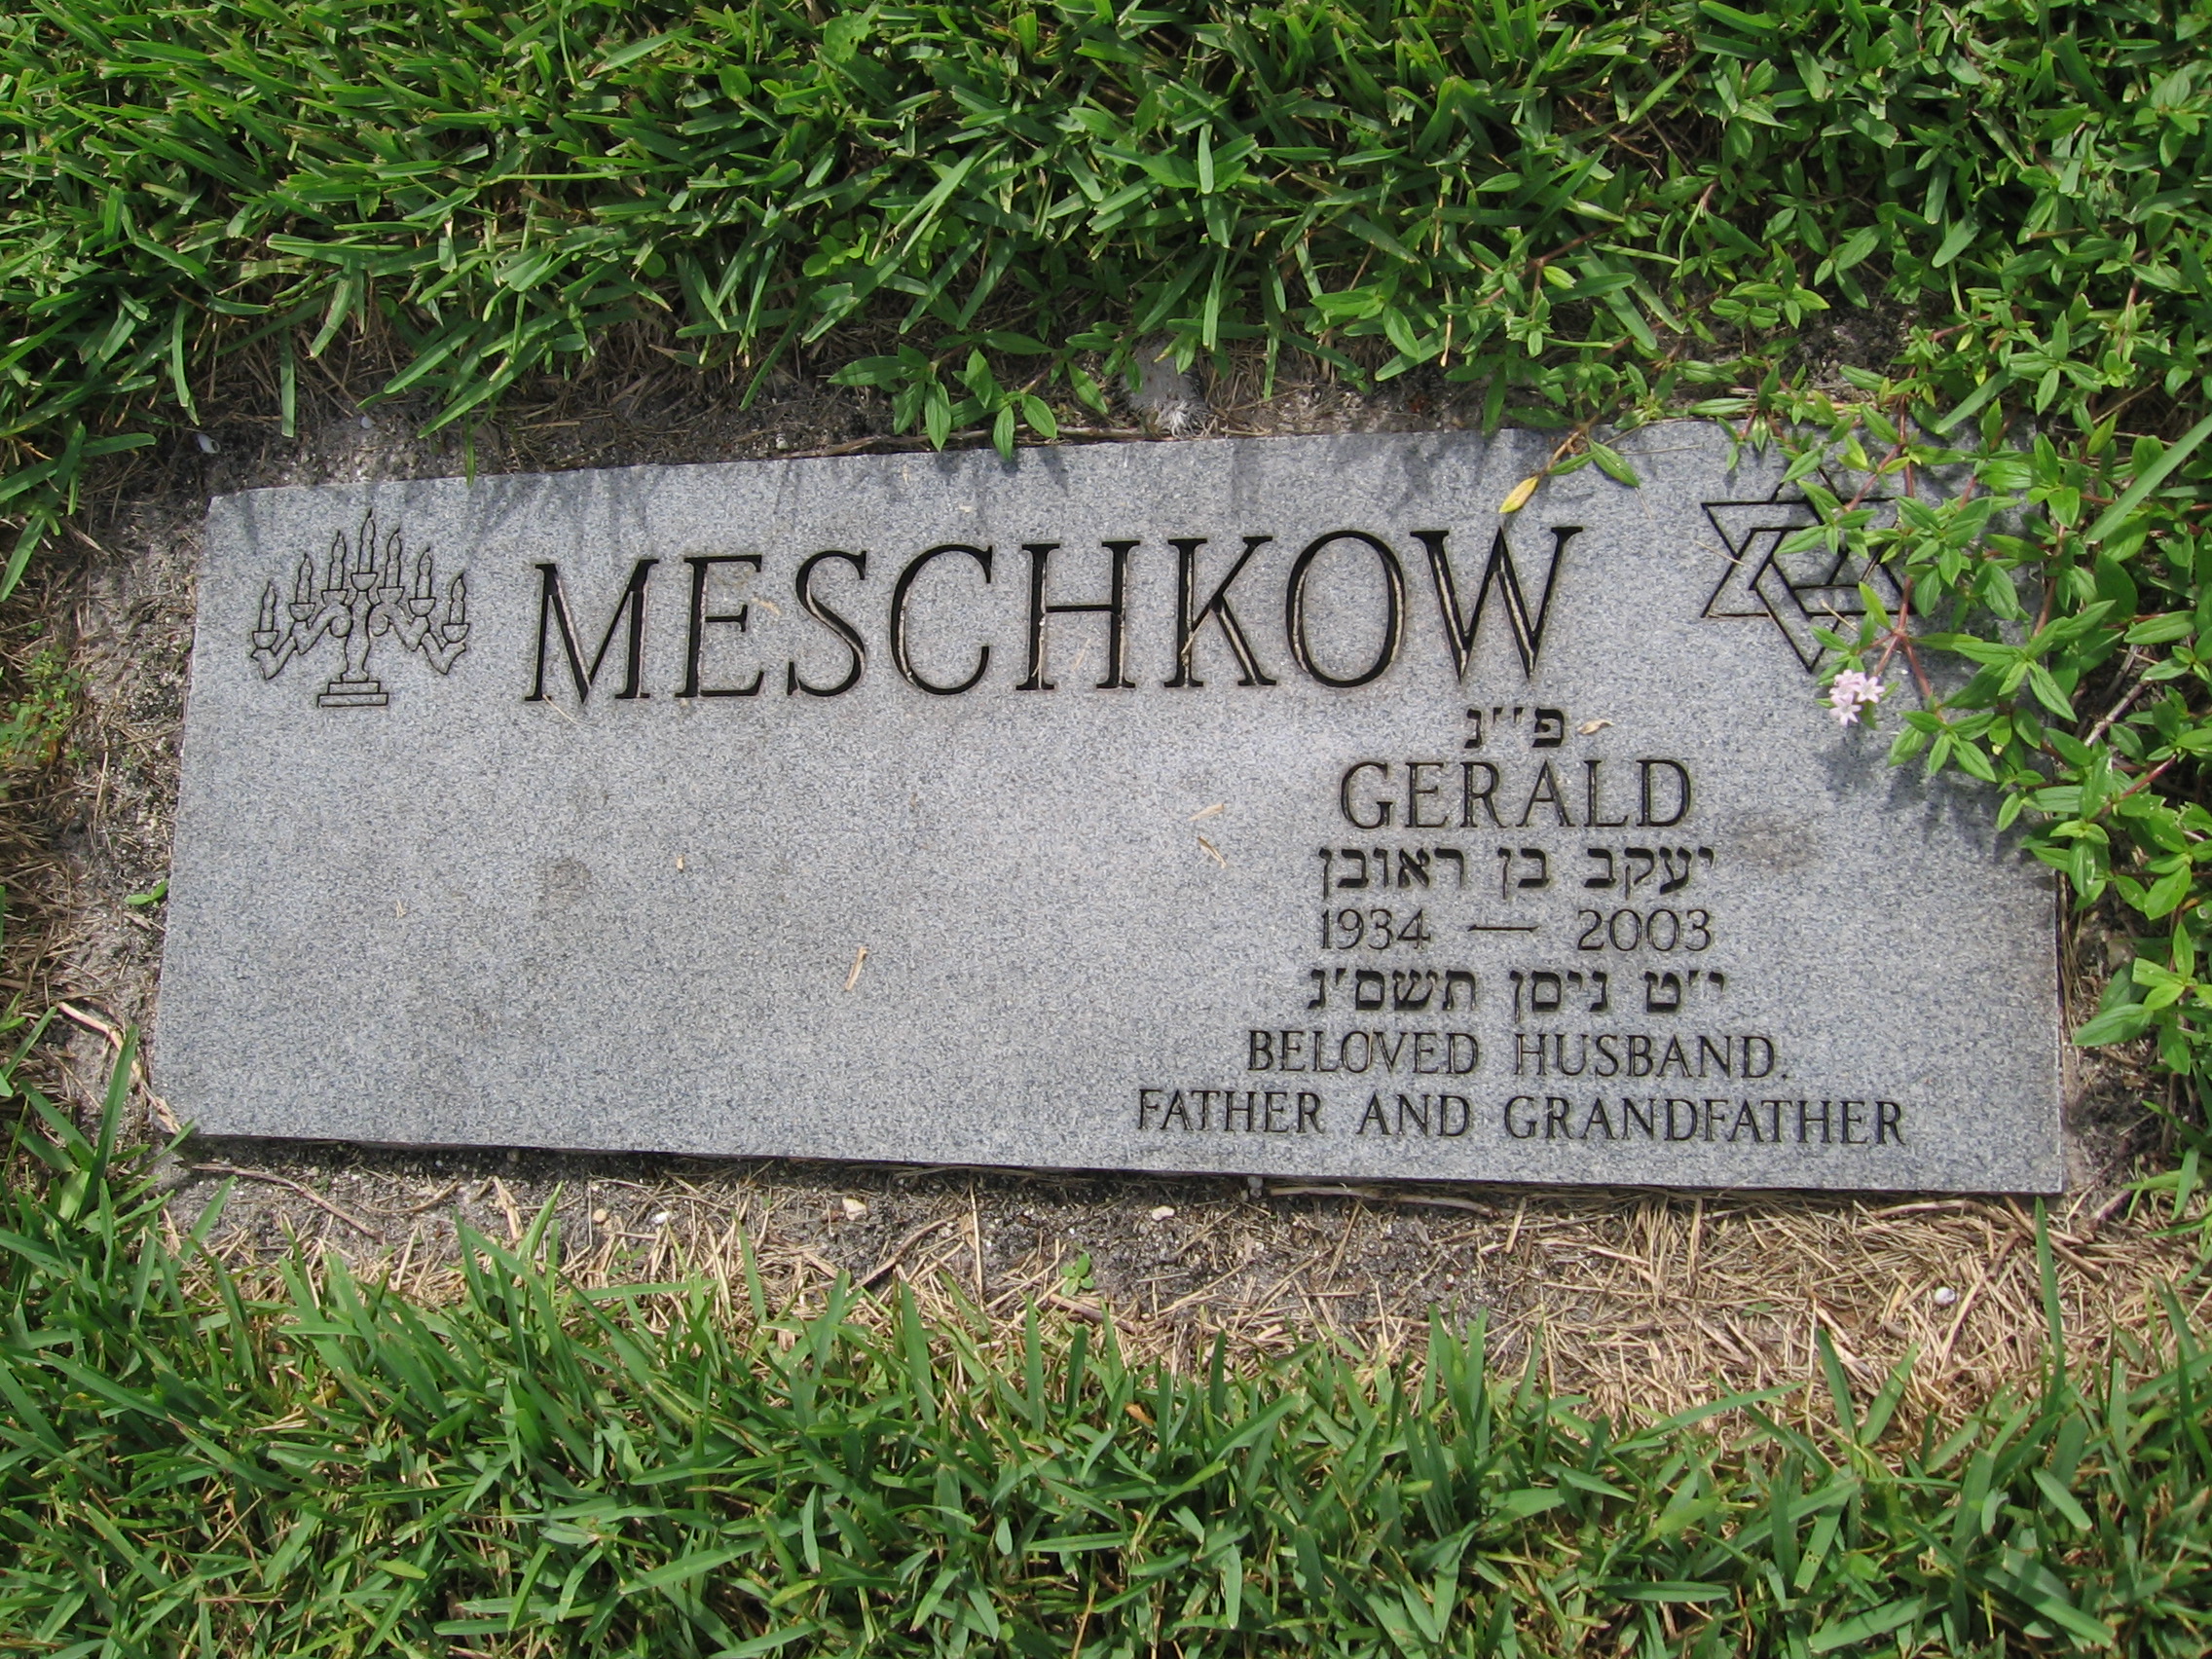 Gerald Meschkow